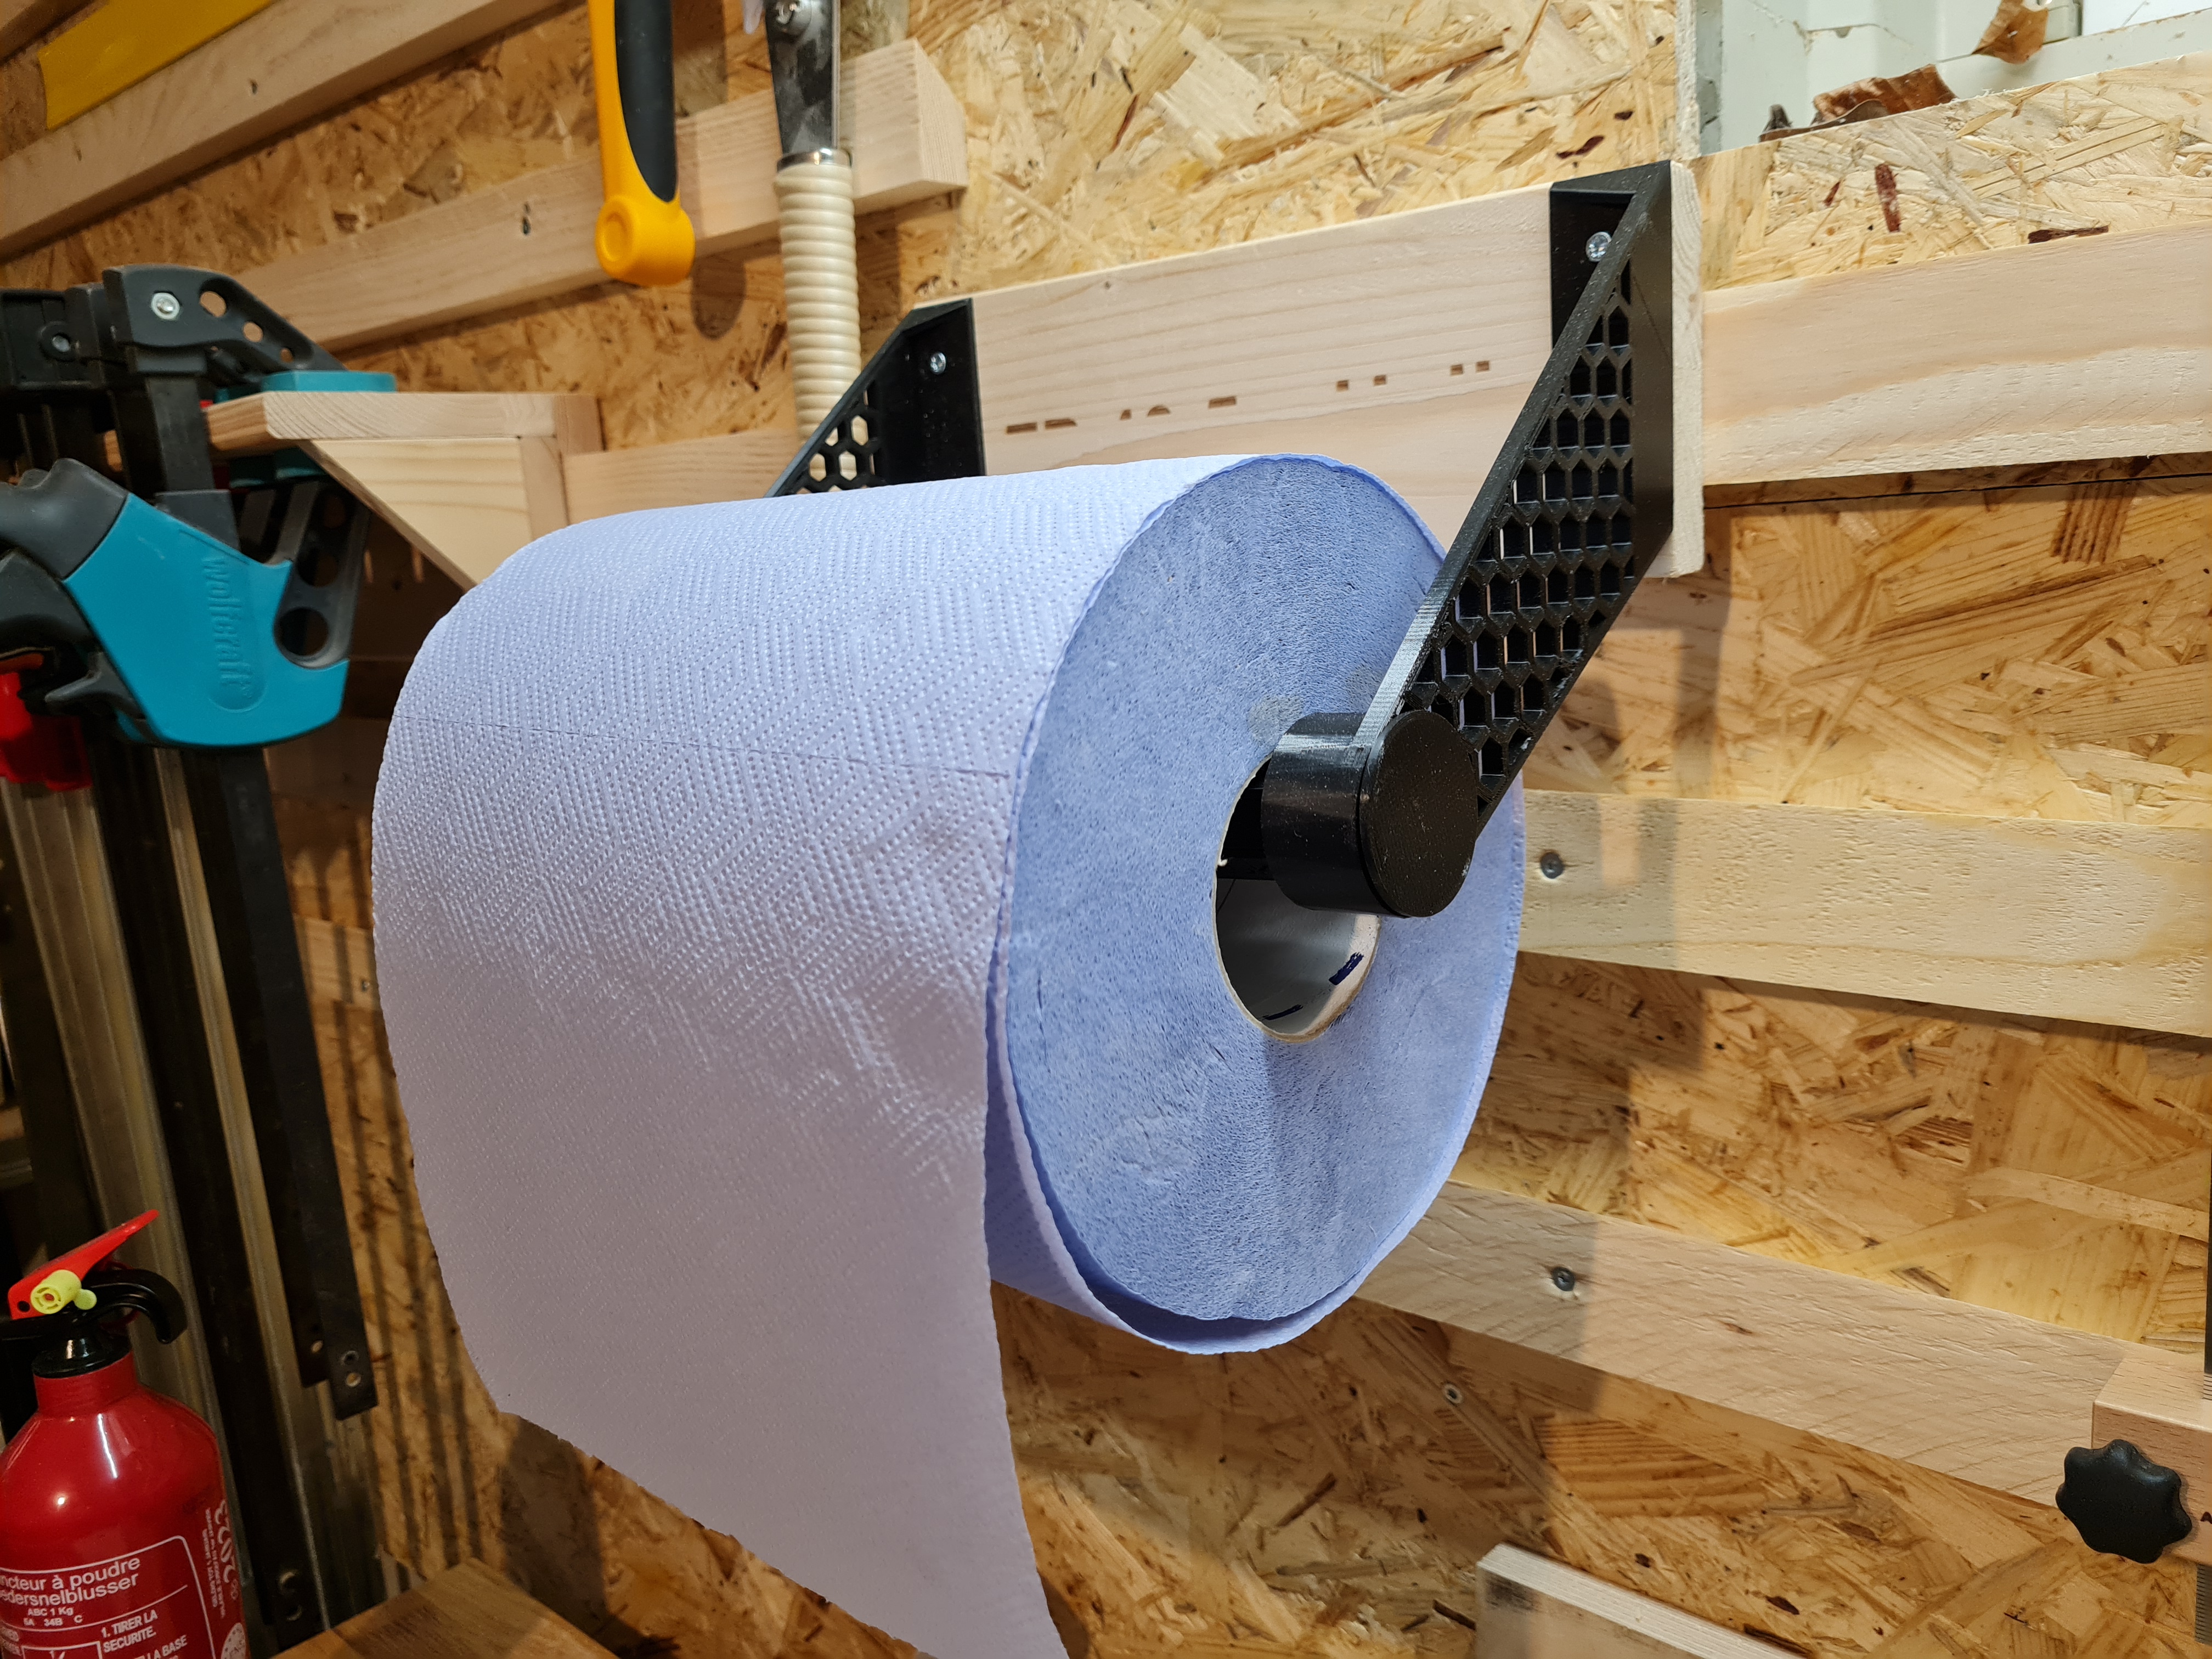 Paper towel holder for large workshop paper towel rolls